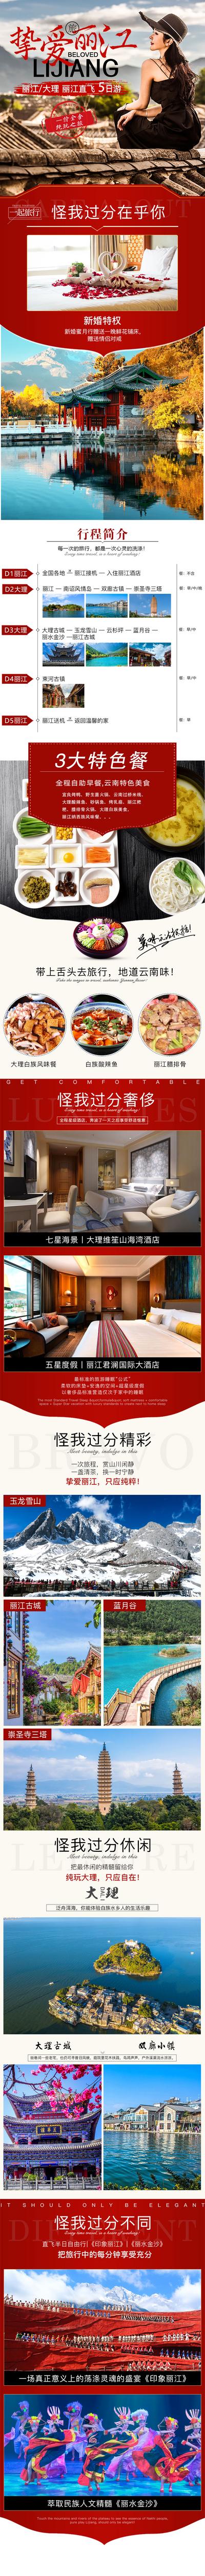 南门网 广告 电商 长图 丽江 旅游 行程 风景